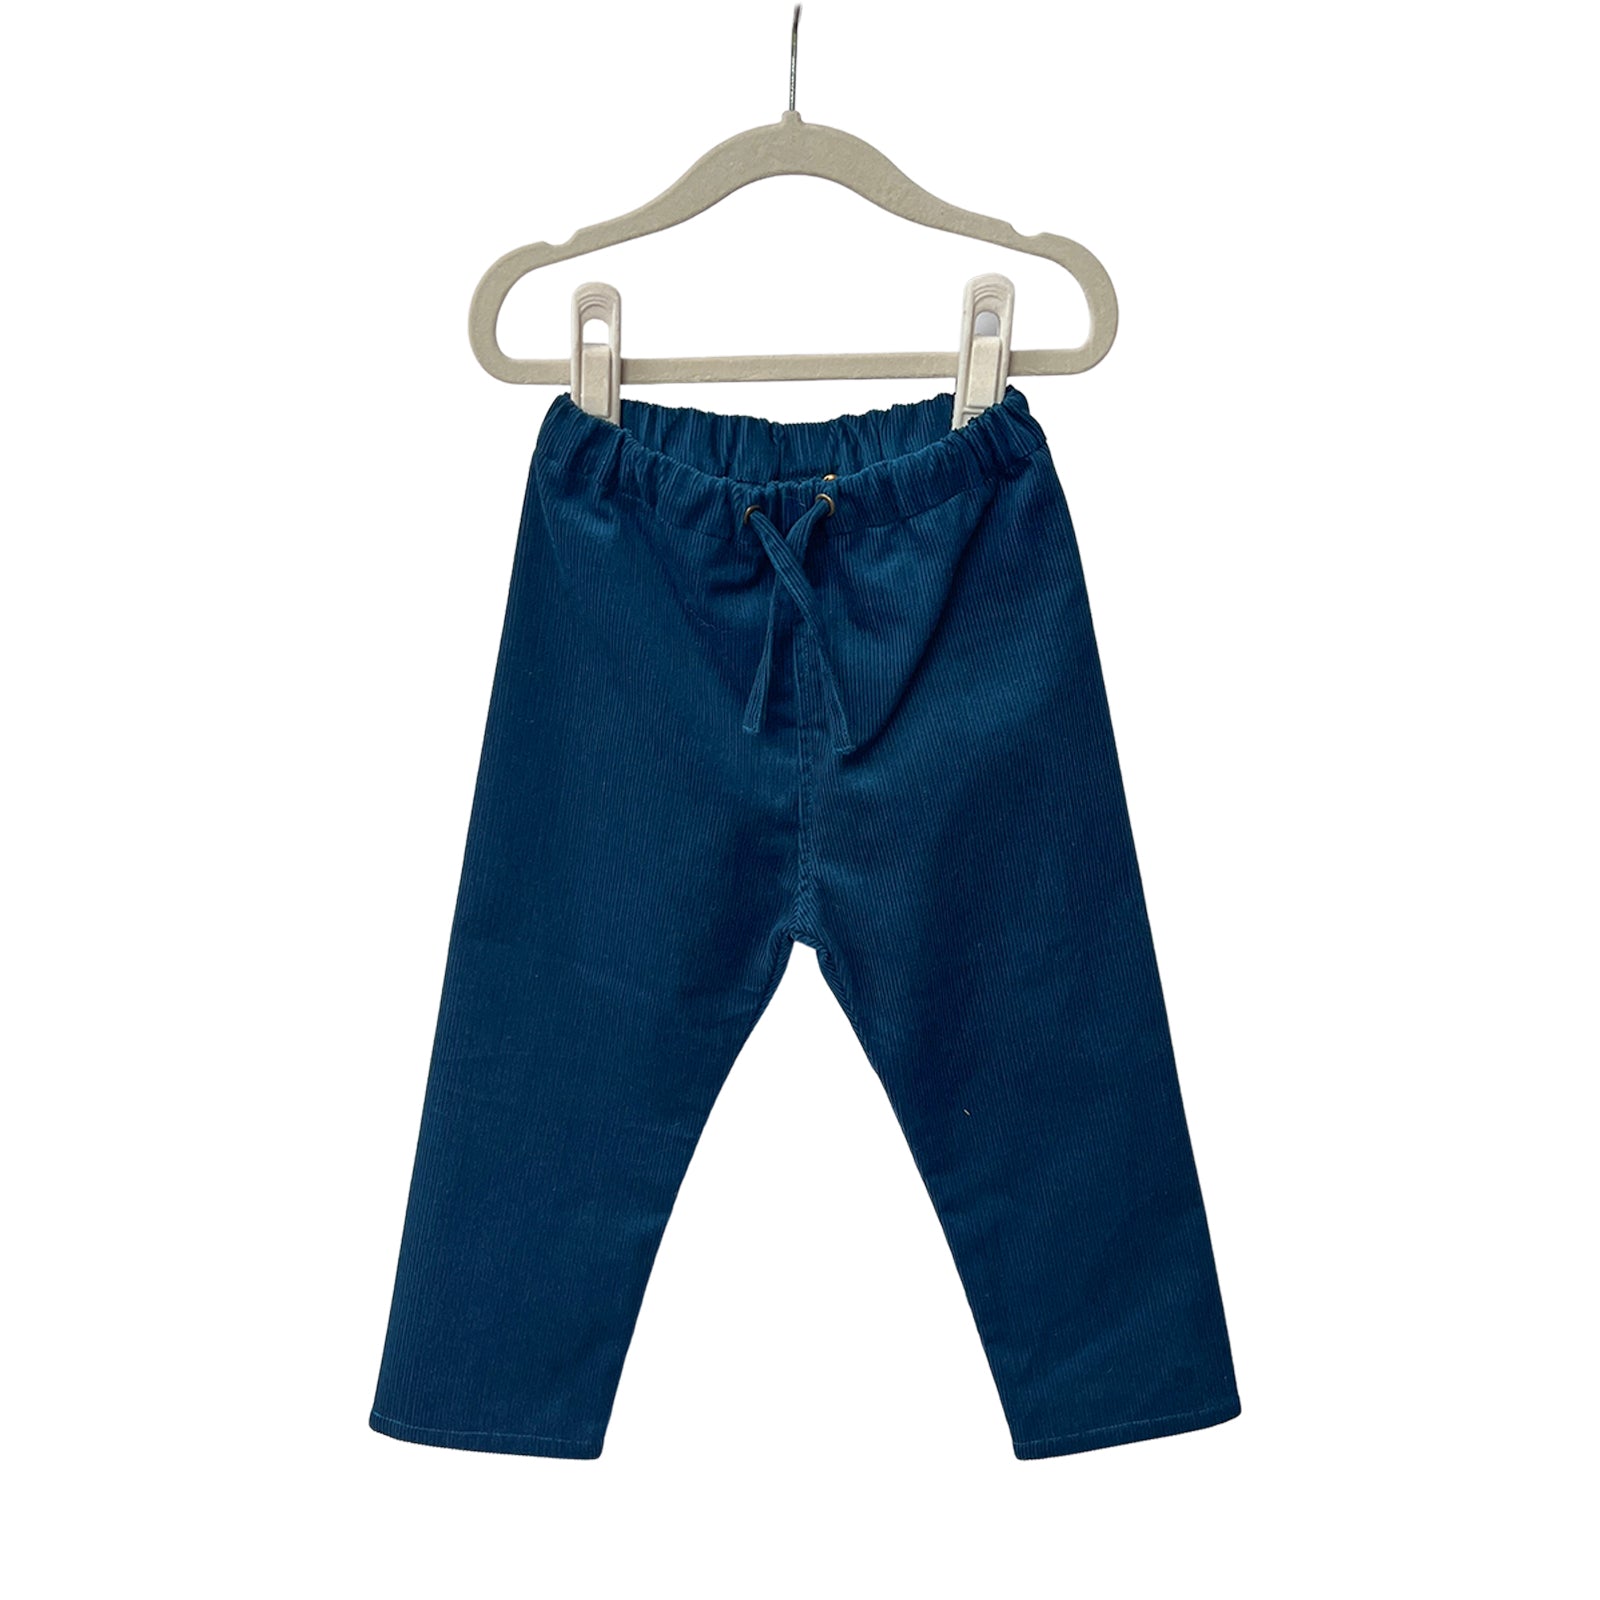 2T OOAK Monterey Blue Corduroy Pants SAMPLE